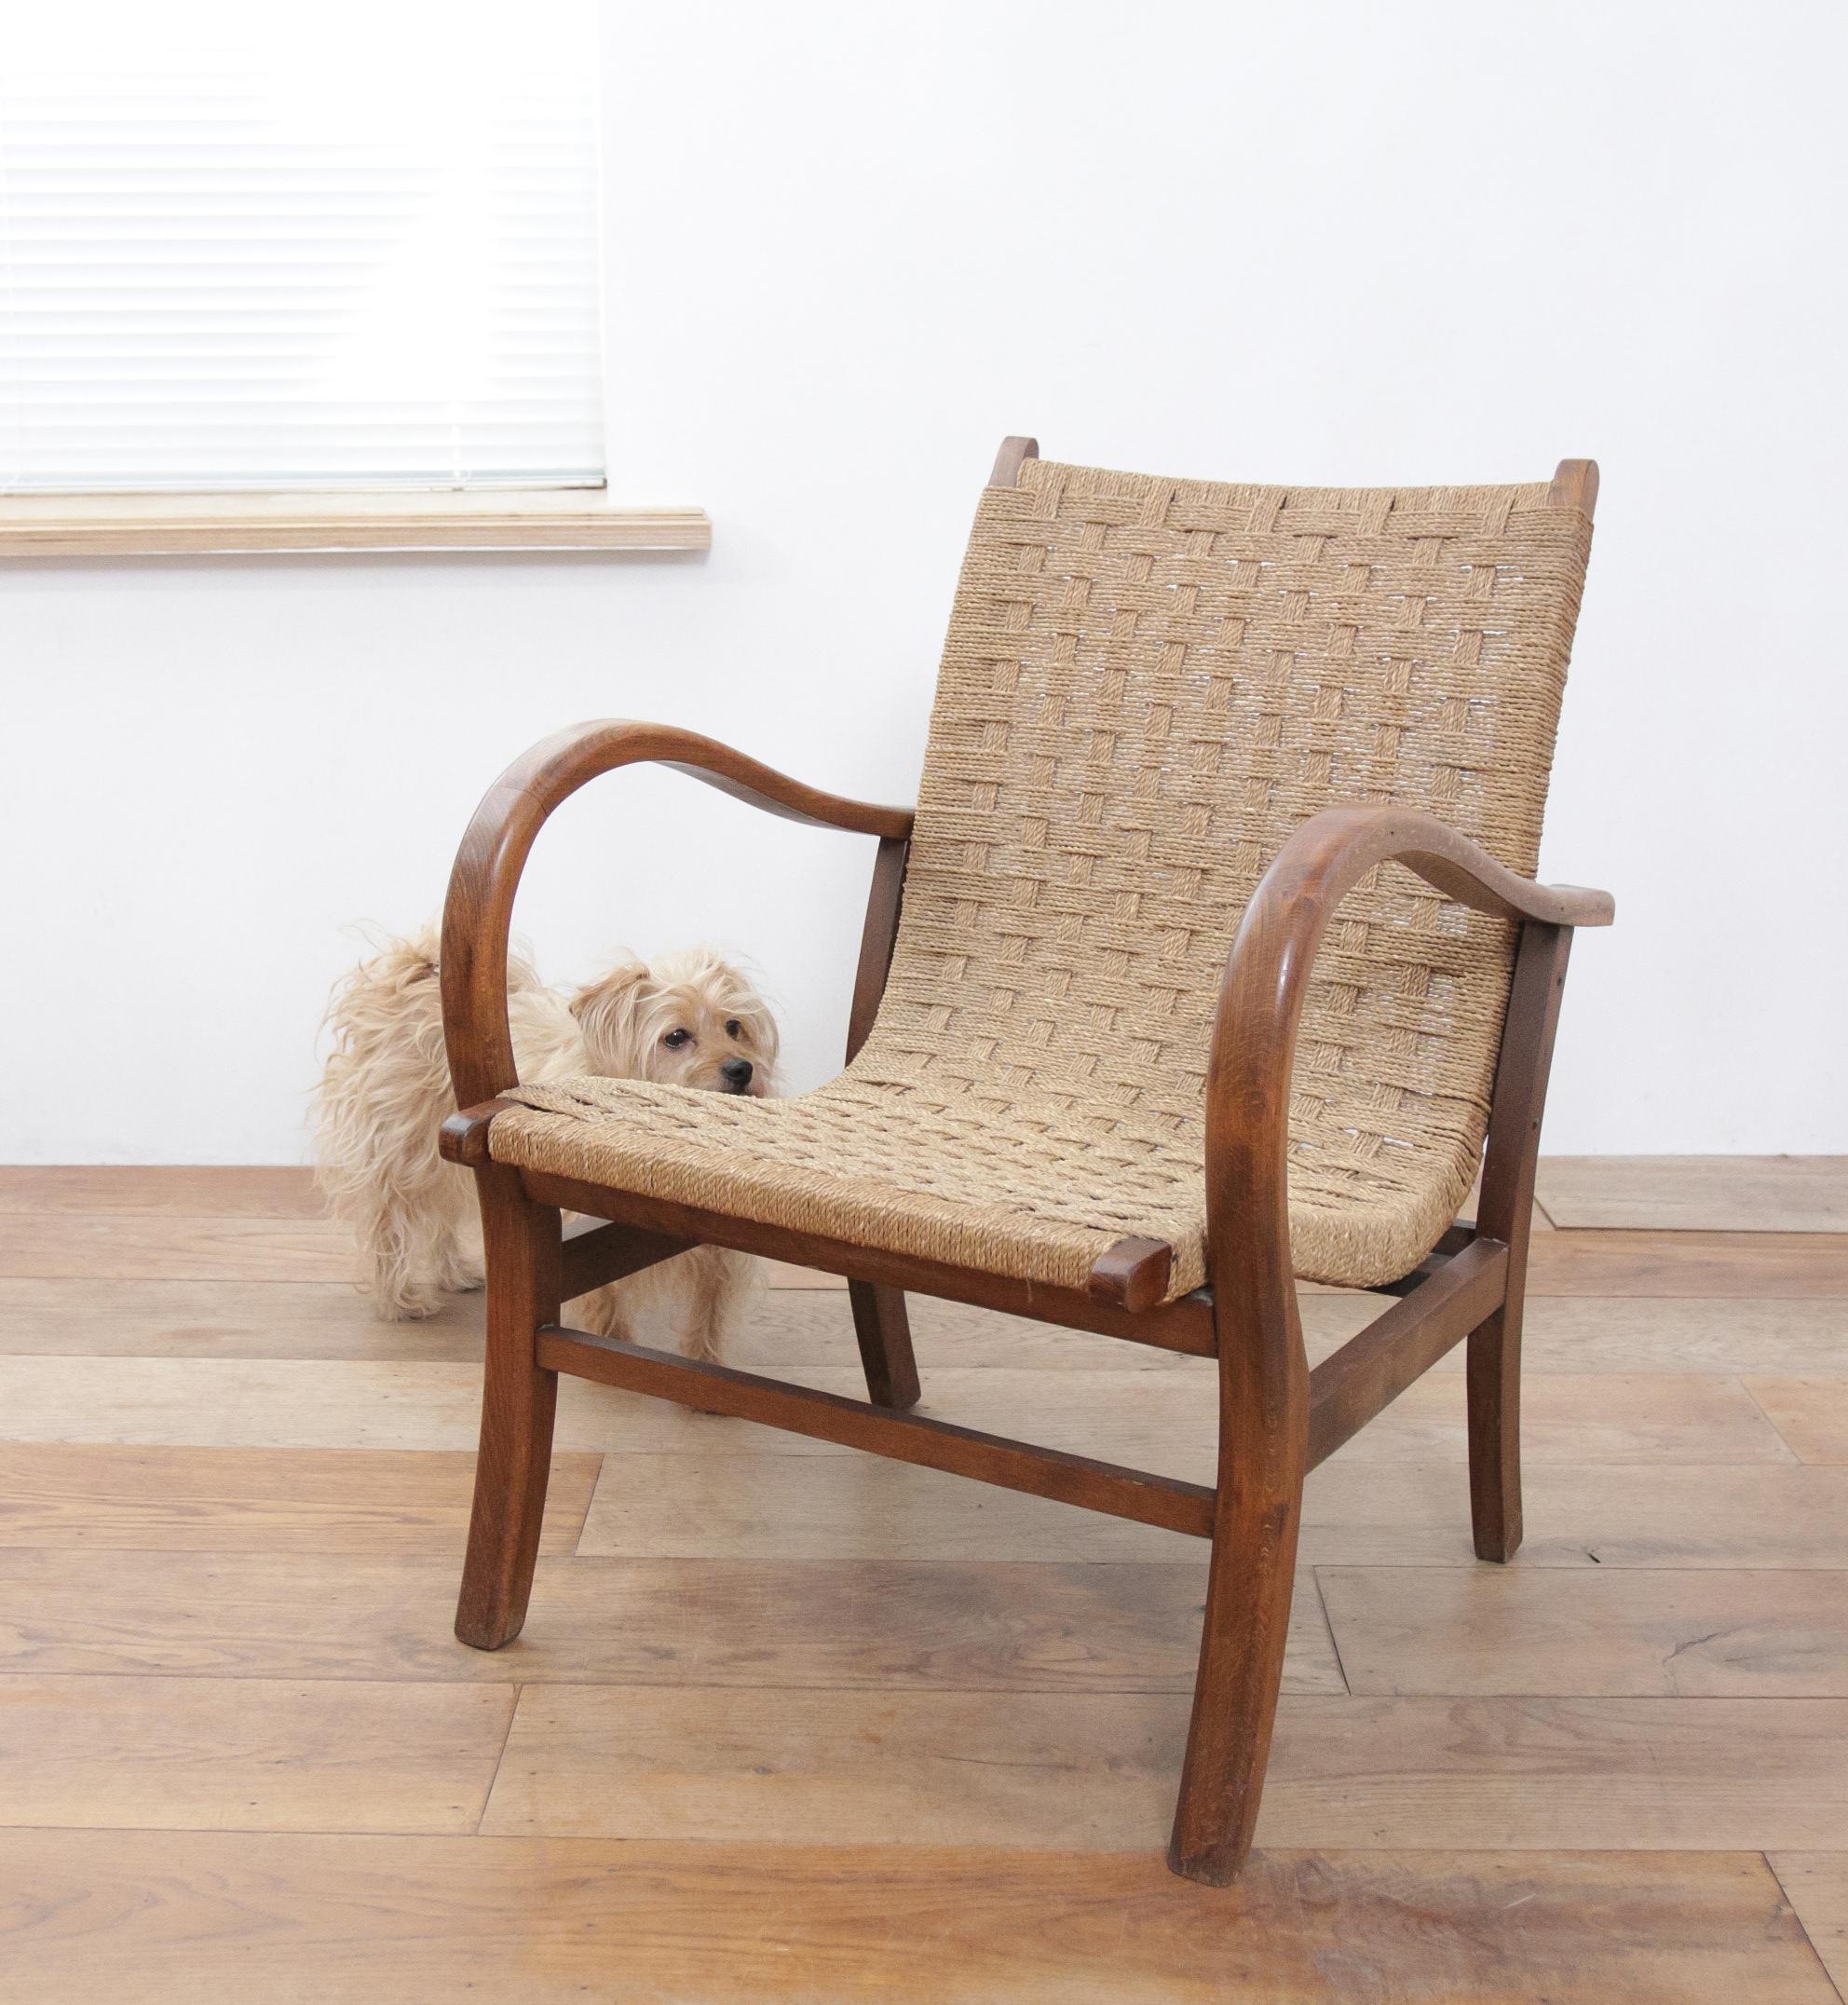 Dies ist ein seltener und originaler Bauhaus-Sessel von Erich Dieckmann.

Erich Dieckmann war einer der wichtigsten Möbeldesigner am Bauhaus und entwickelte Typenprogramme für Sitzmöbel. Wie Marcel Breuer experimentierte auch Erich Dieckmann mit